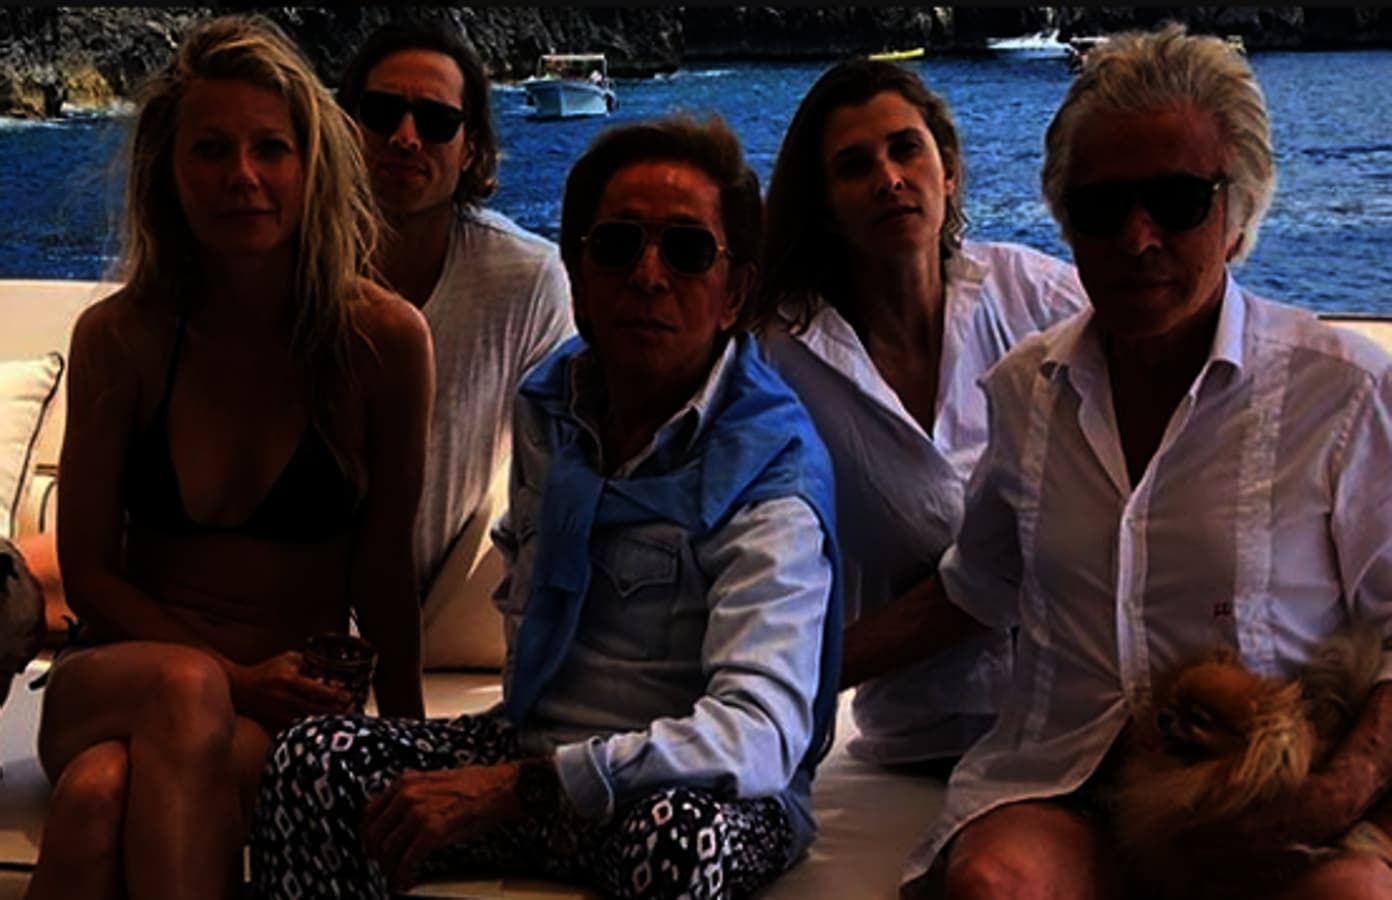 Valentino en Capri. El diseñador italiano Valentino ha disfrutado los últimos días en la isla de Capri junto a su amigo y socio Giancarlo Giammetti, la actriz Gwyneth Paltrow, su prometido Brad Falchuk y Rosario Nadal.